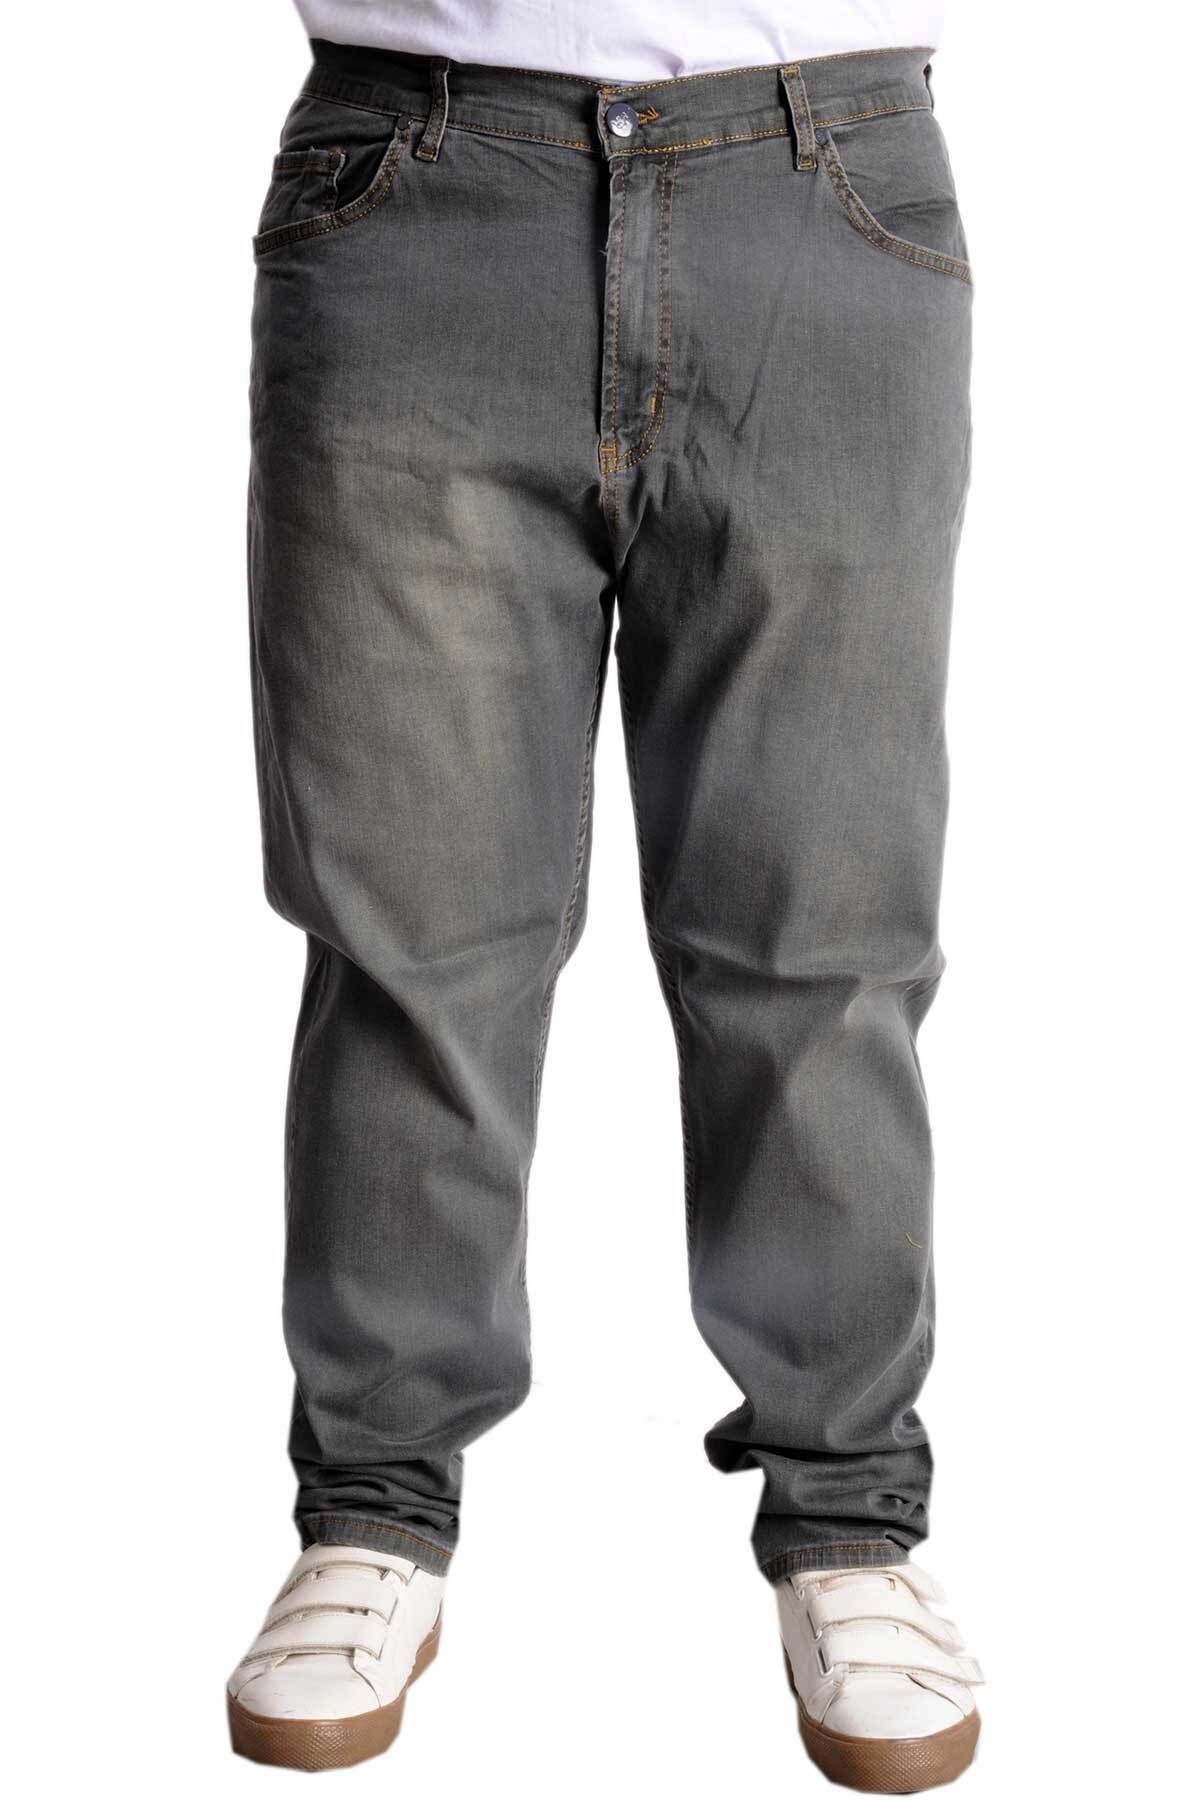 Modexl Mode XL Büyük Beden Erkek Kot Pantolon 5Cep Tint 23915 Yeşil